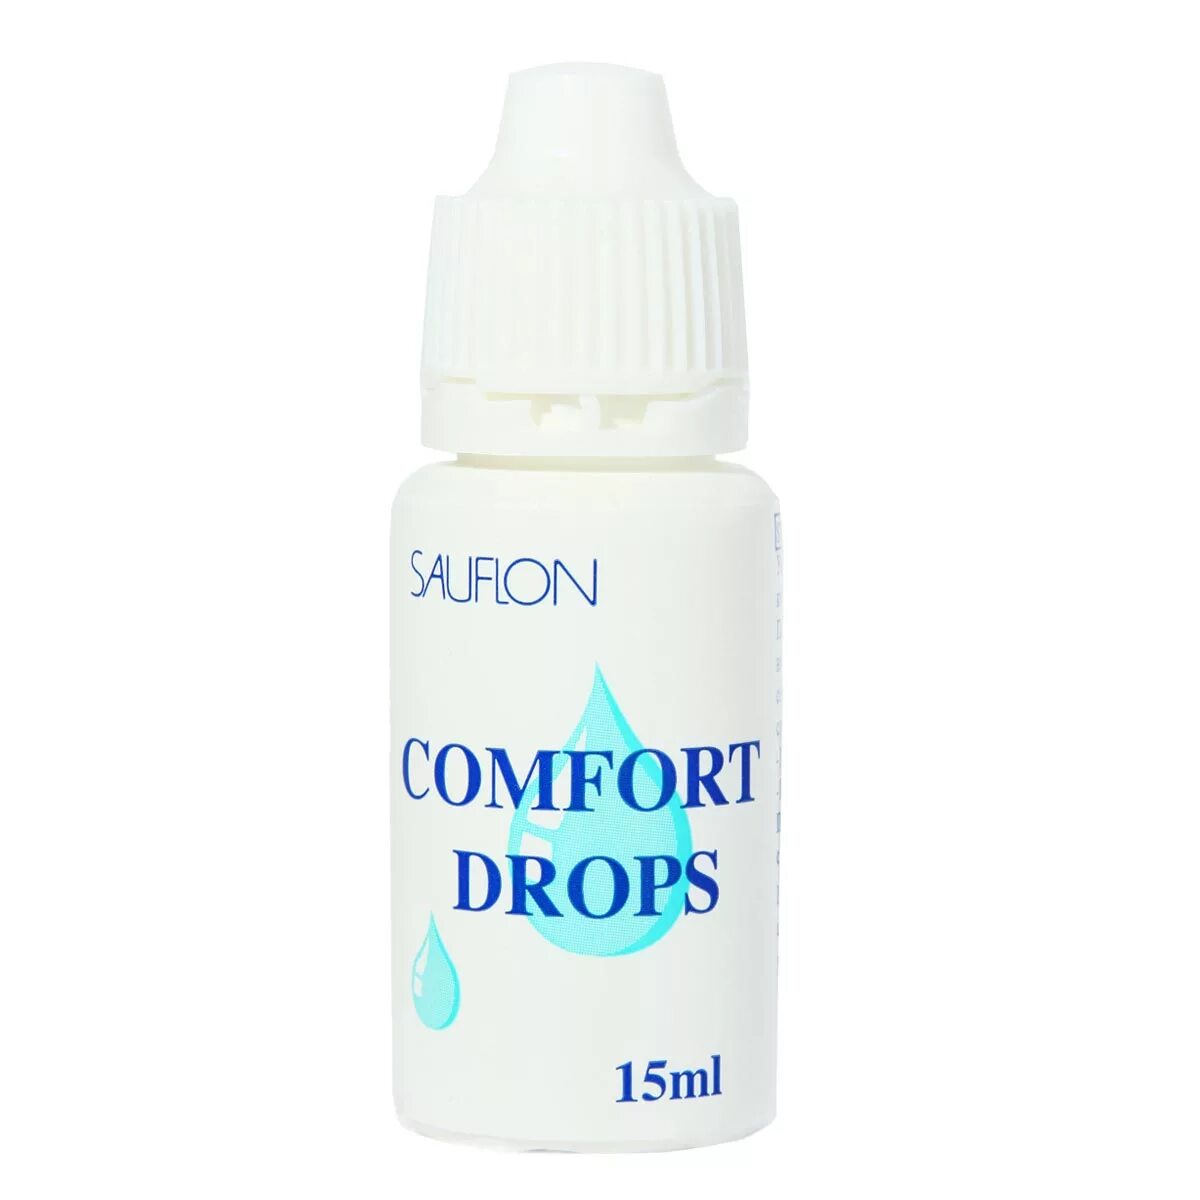 Капли Comfort Drops Cooper Vision. Avizor Comfort Drops 15 мл. Sauflon Comfort Drops. • Comfort Drops от Sauflon;.